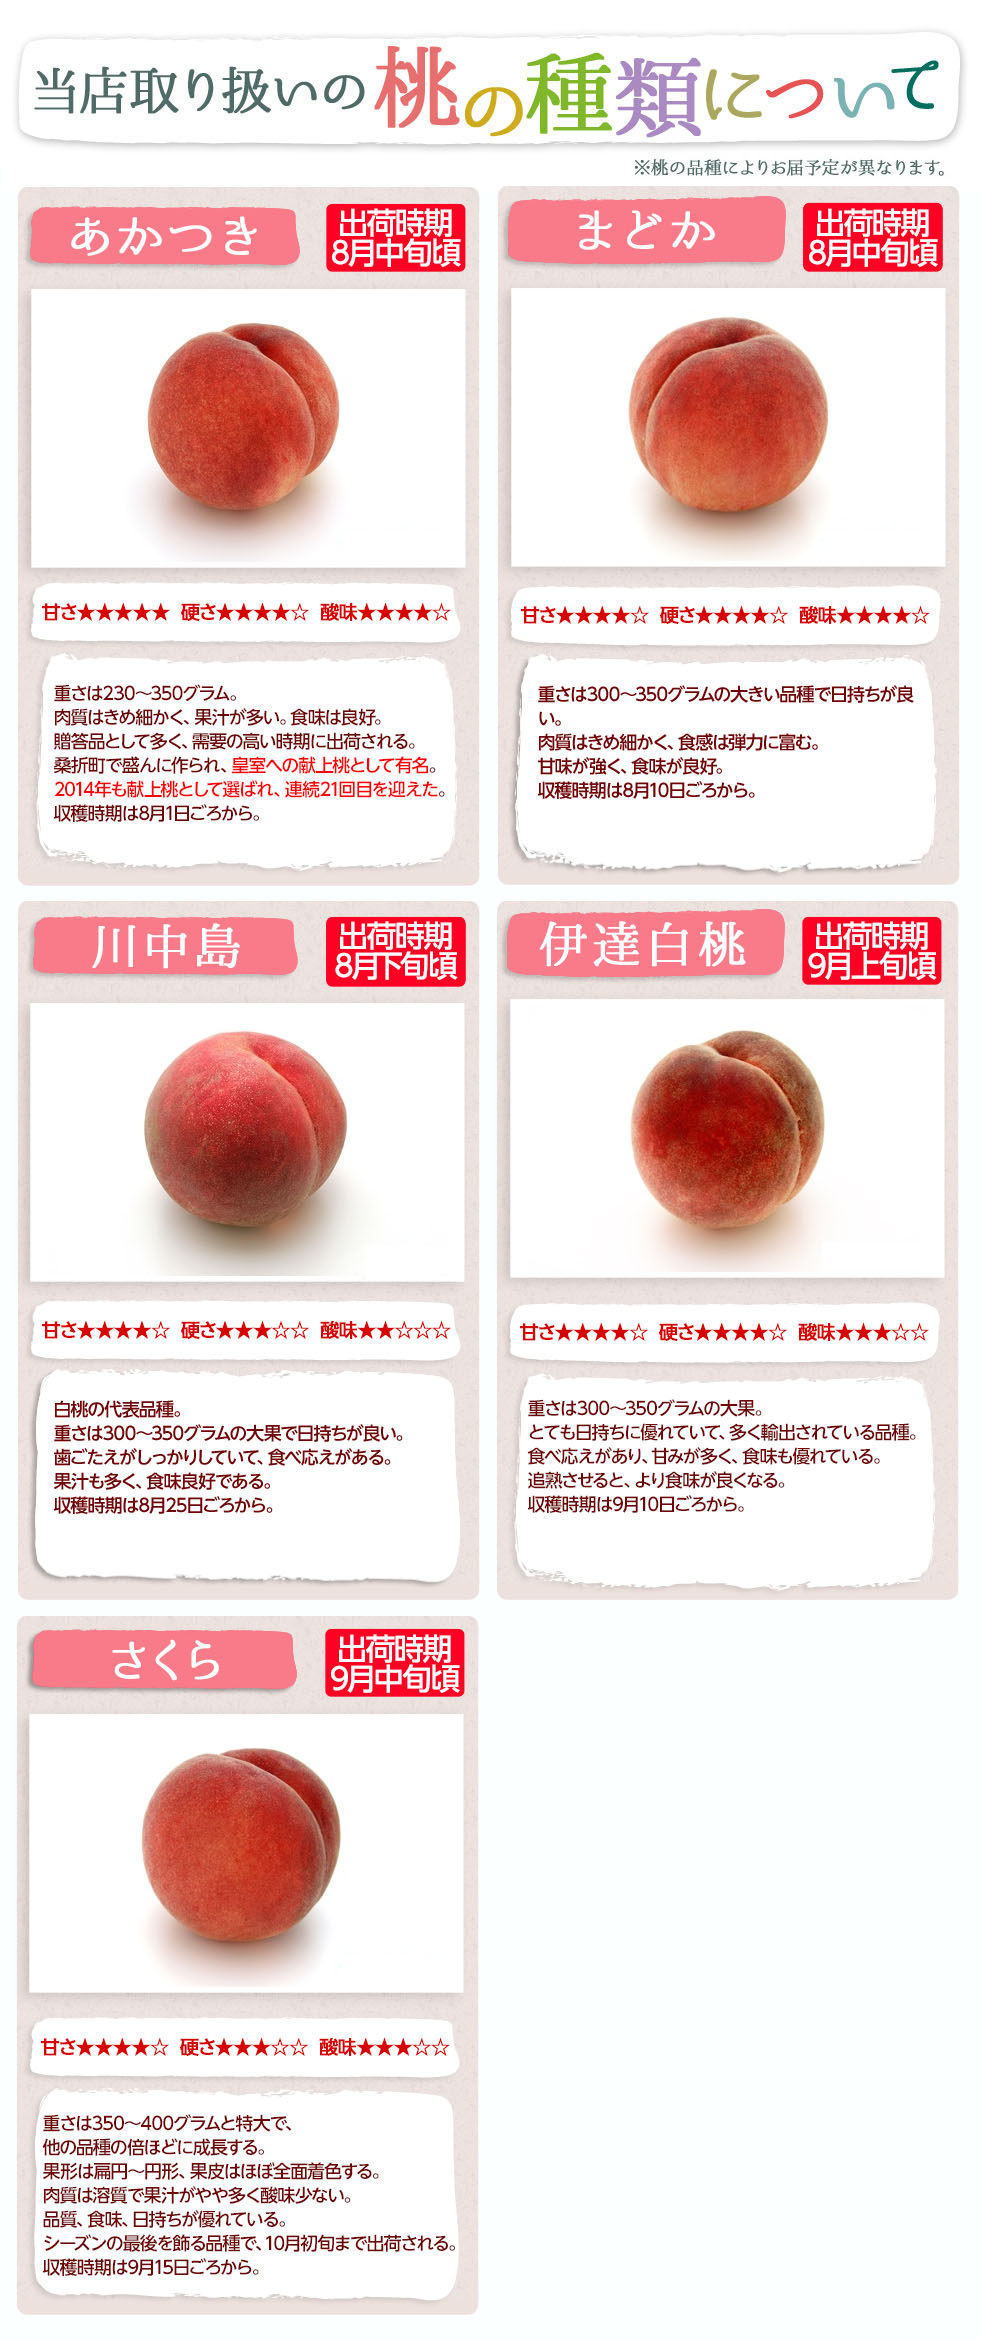 桃の品種について